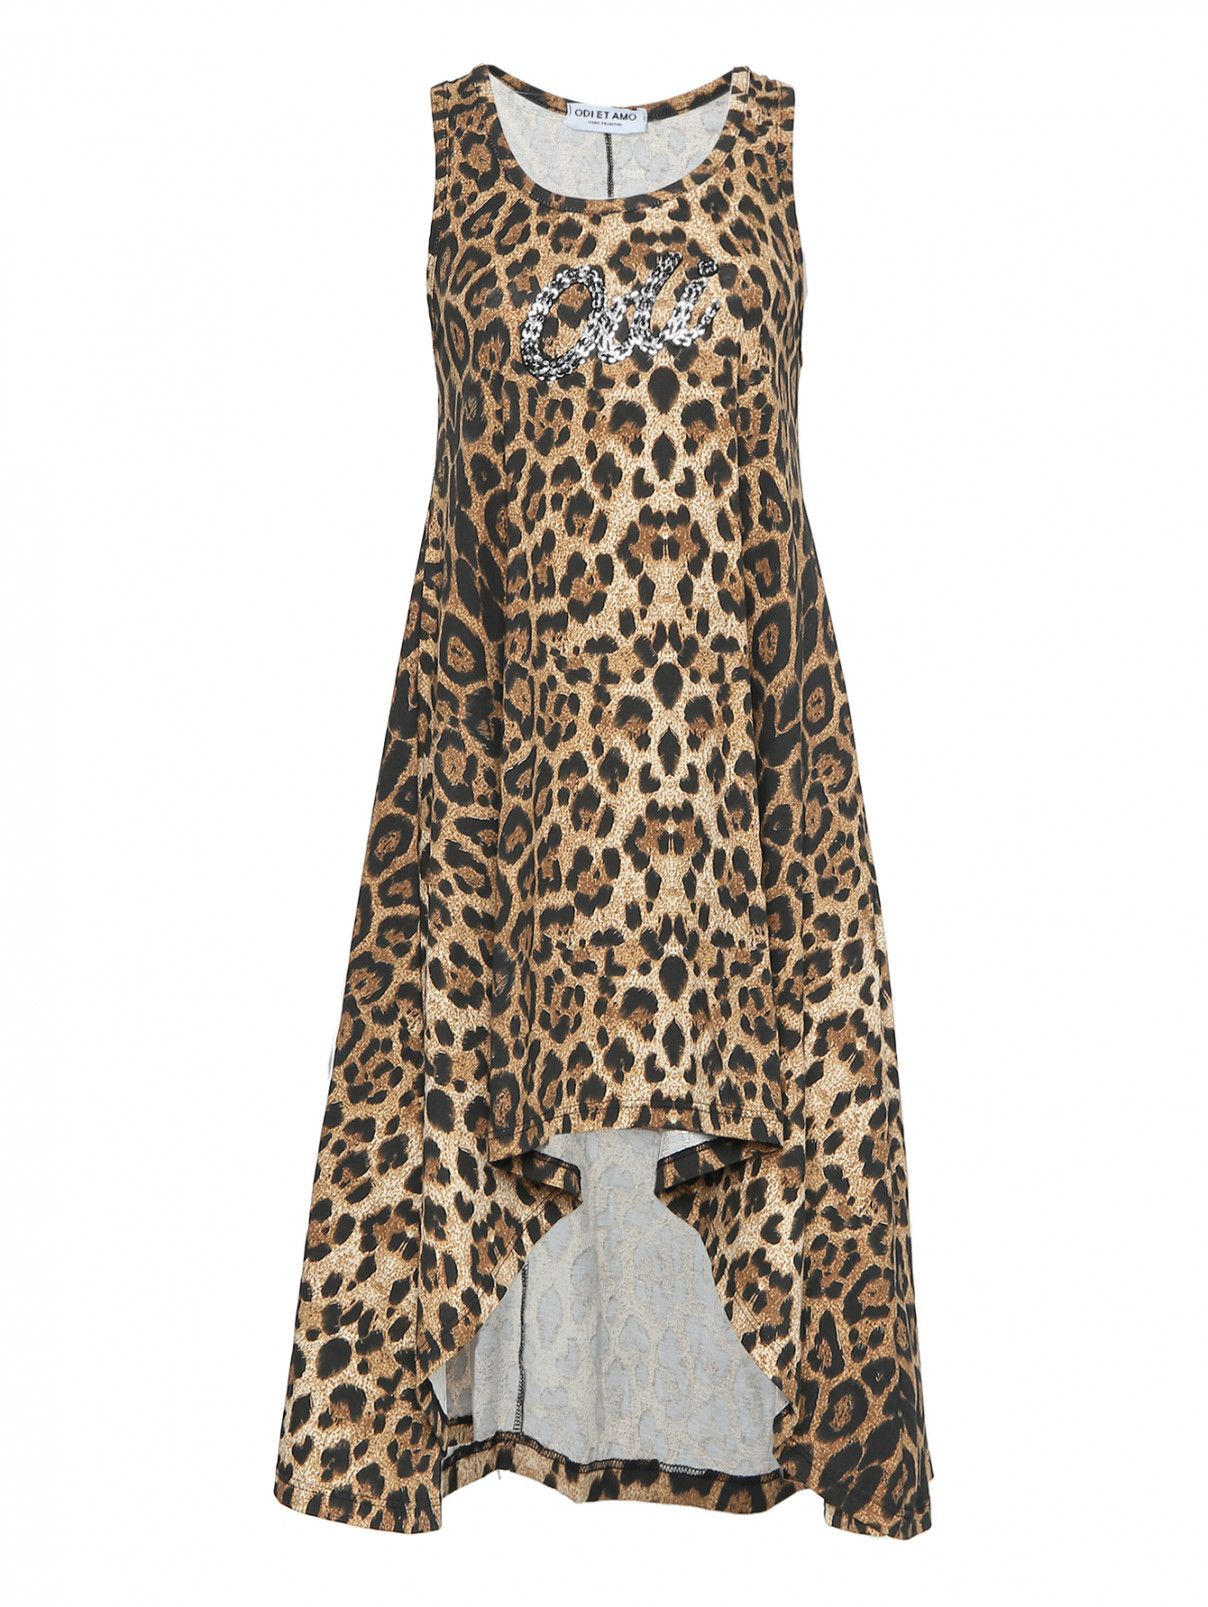 Платье из хлопка асимметричного кроя с узором ODI ET AMO  –  Общий вид  – Цвет:  Коричневый